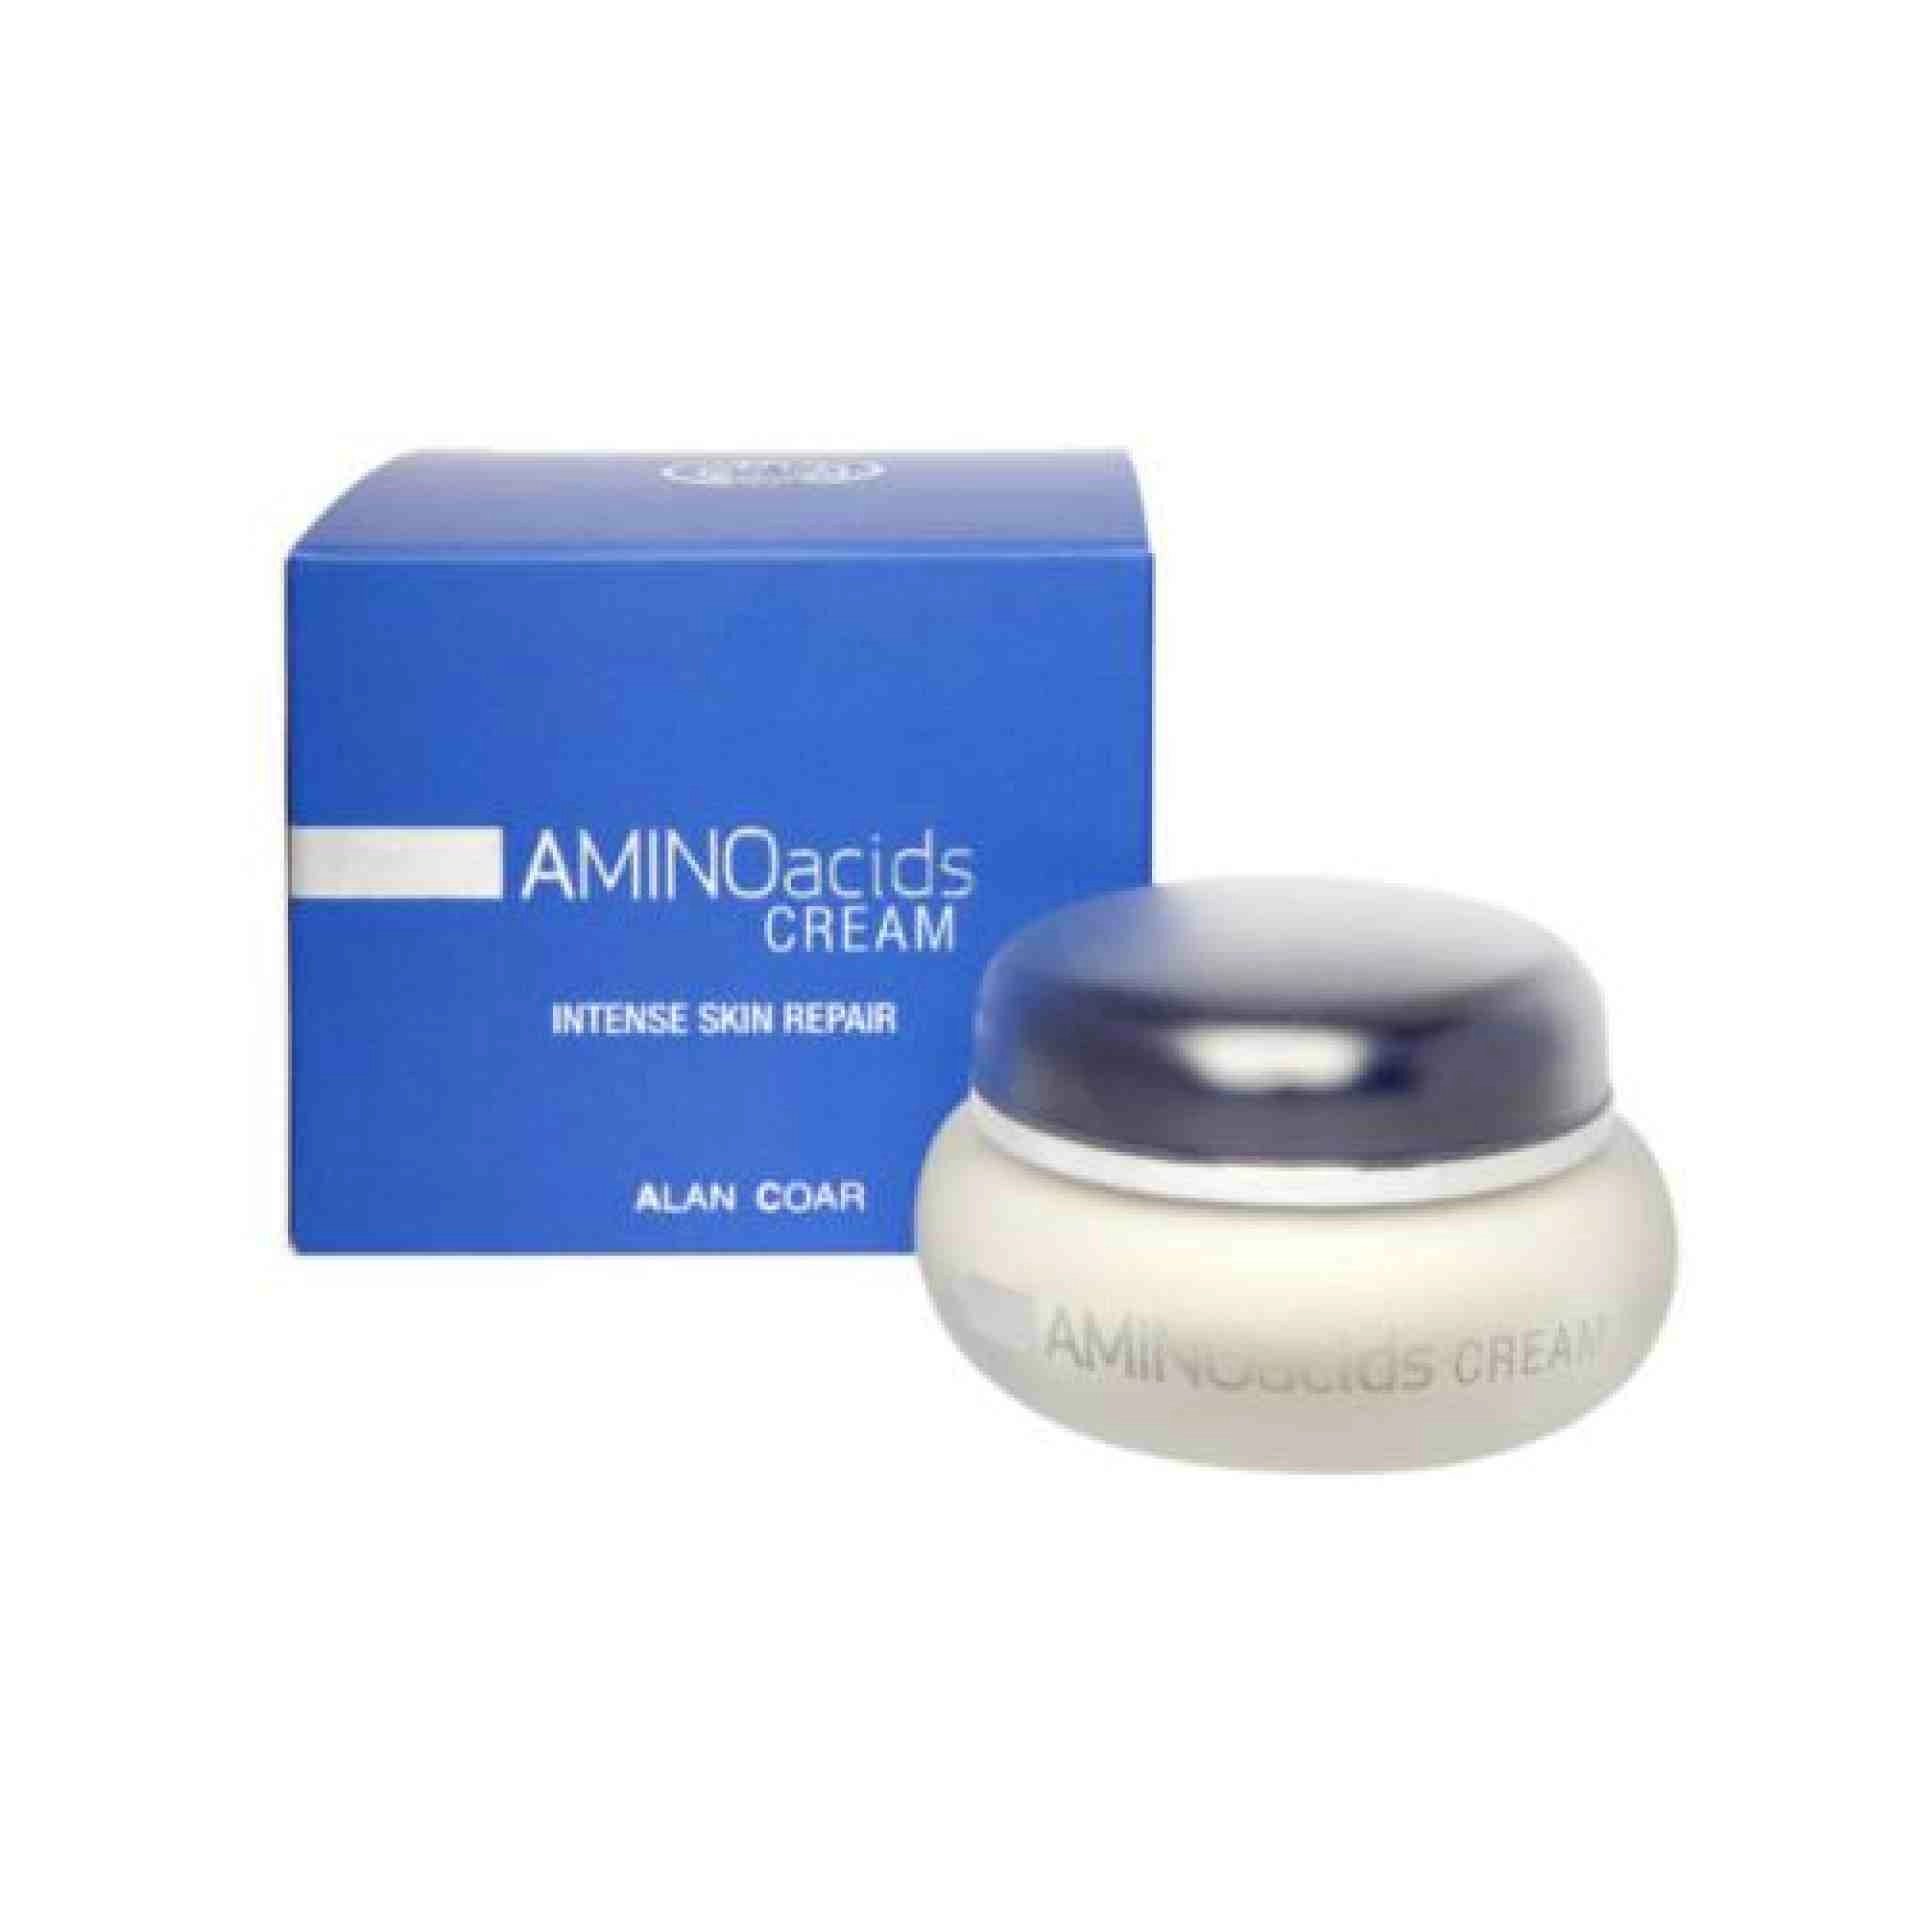 Aminoacids | Crema de aminoácidos 50 ml - A.C - Alan Coar ®